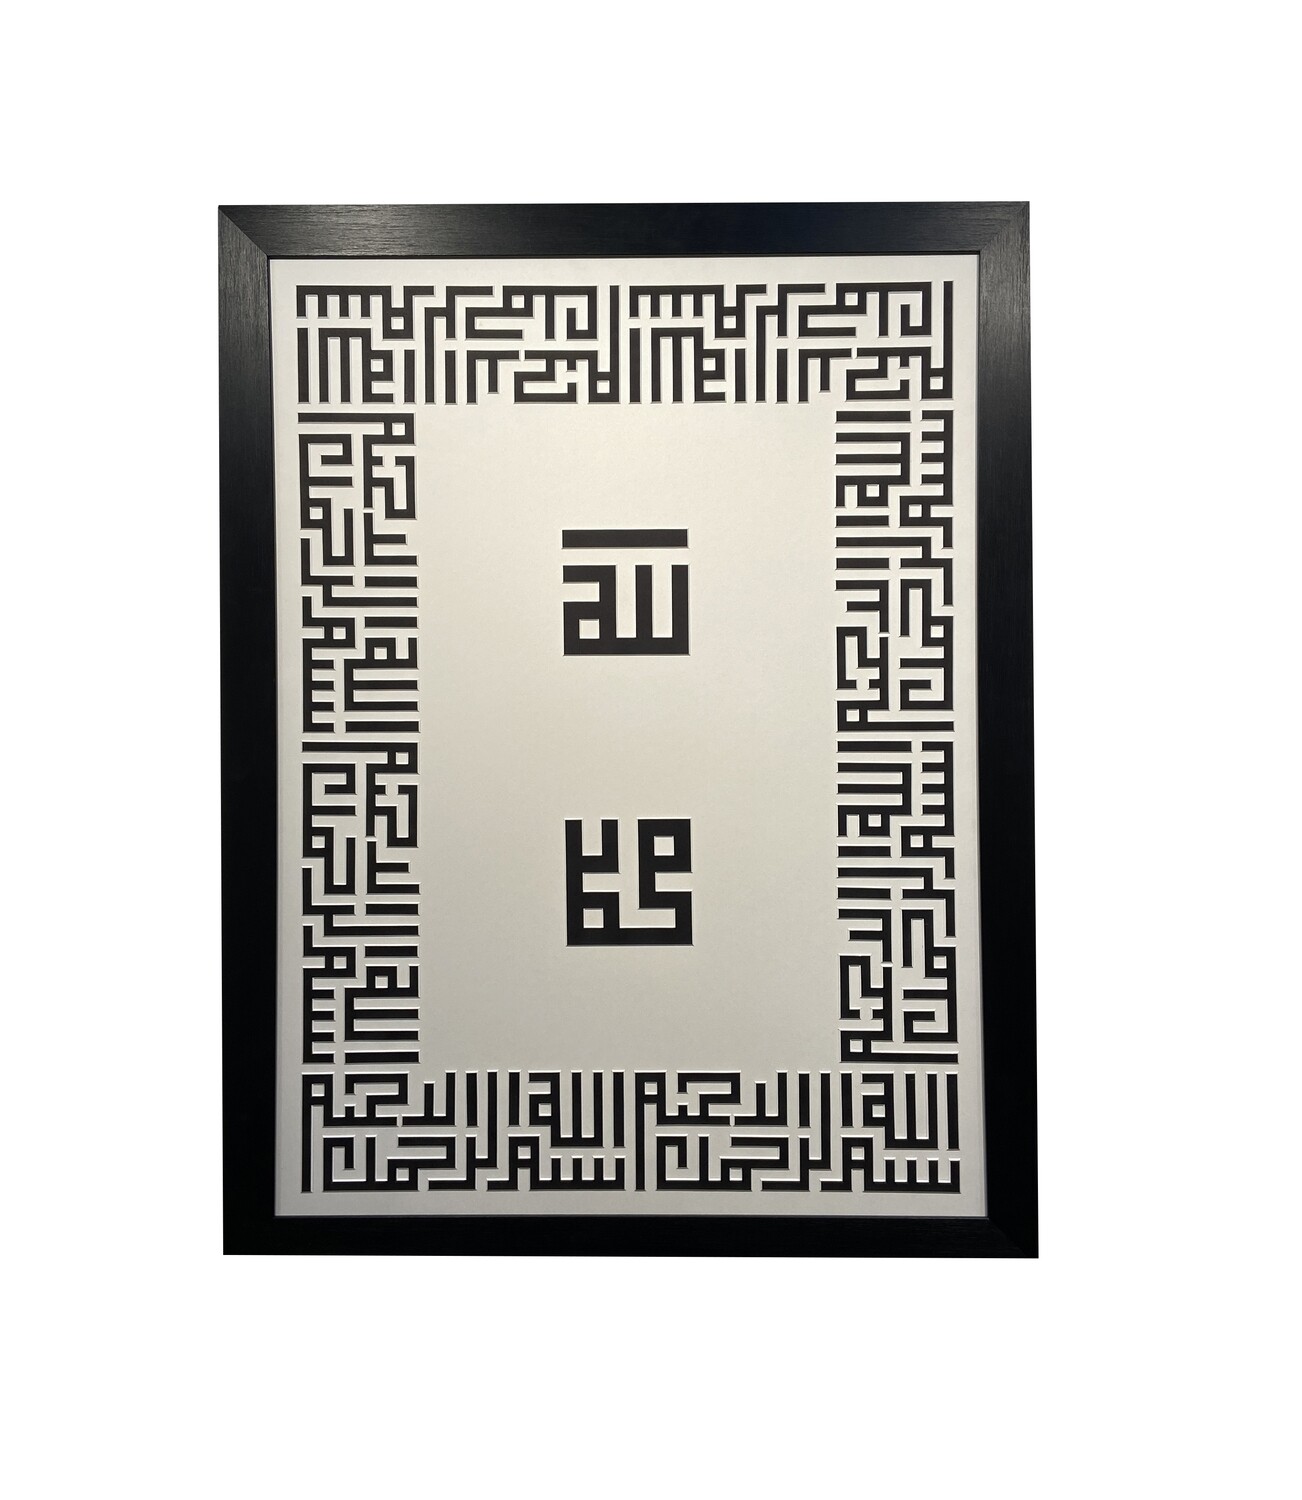 Allah & Mohammed 3D Kufic Bismillah Perimeter Monochrome Design Framed Bas-Relief Art in a Black Frame